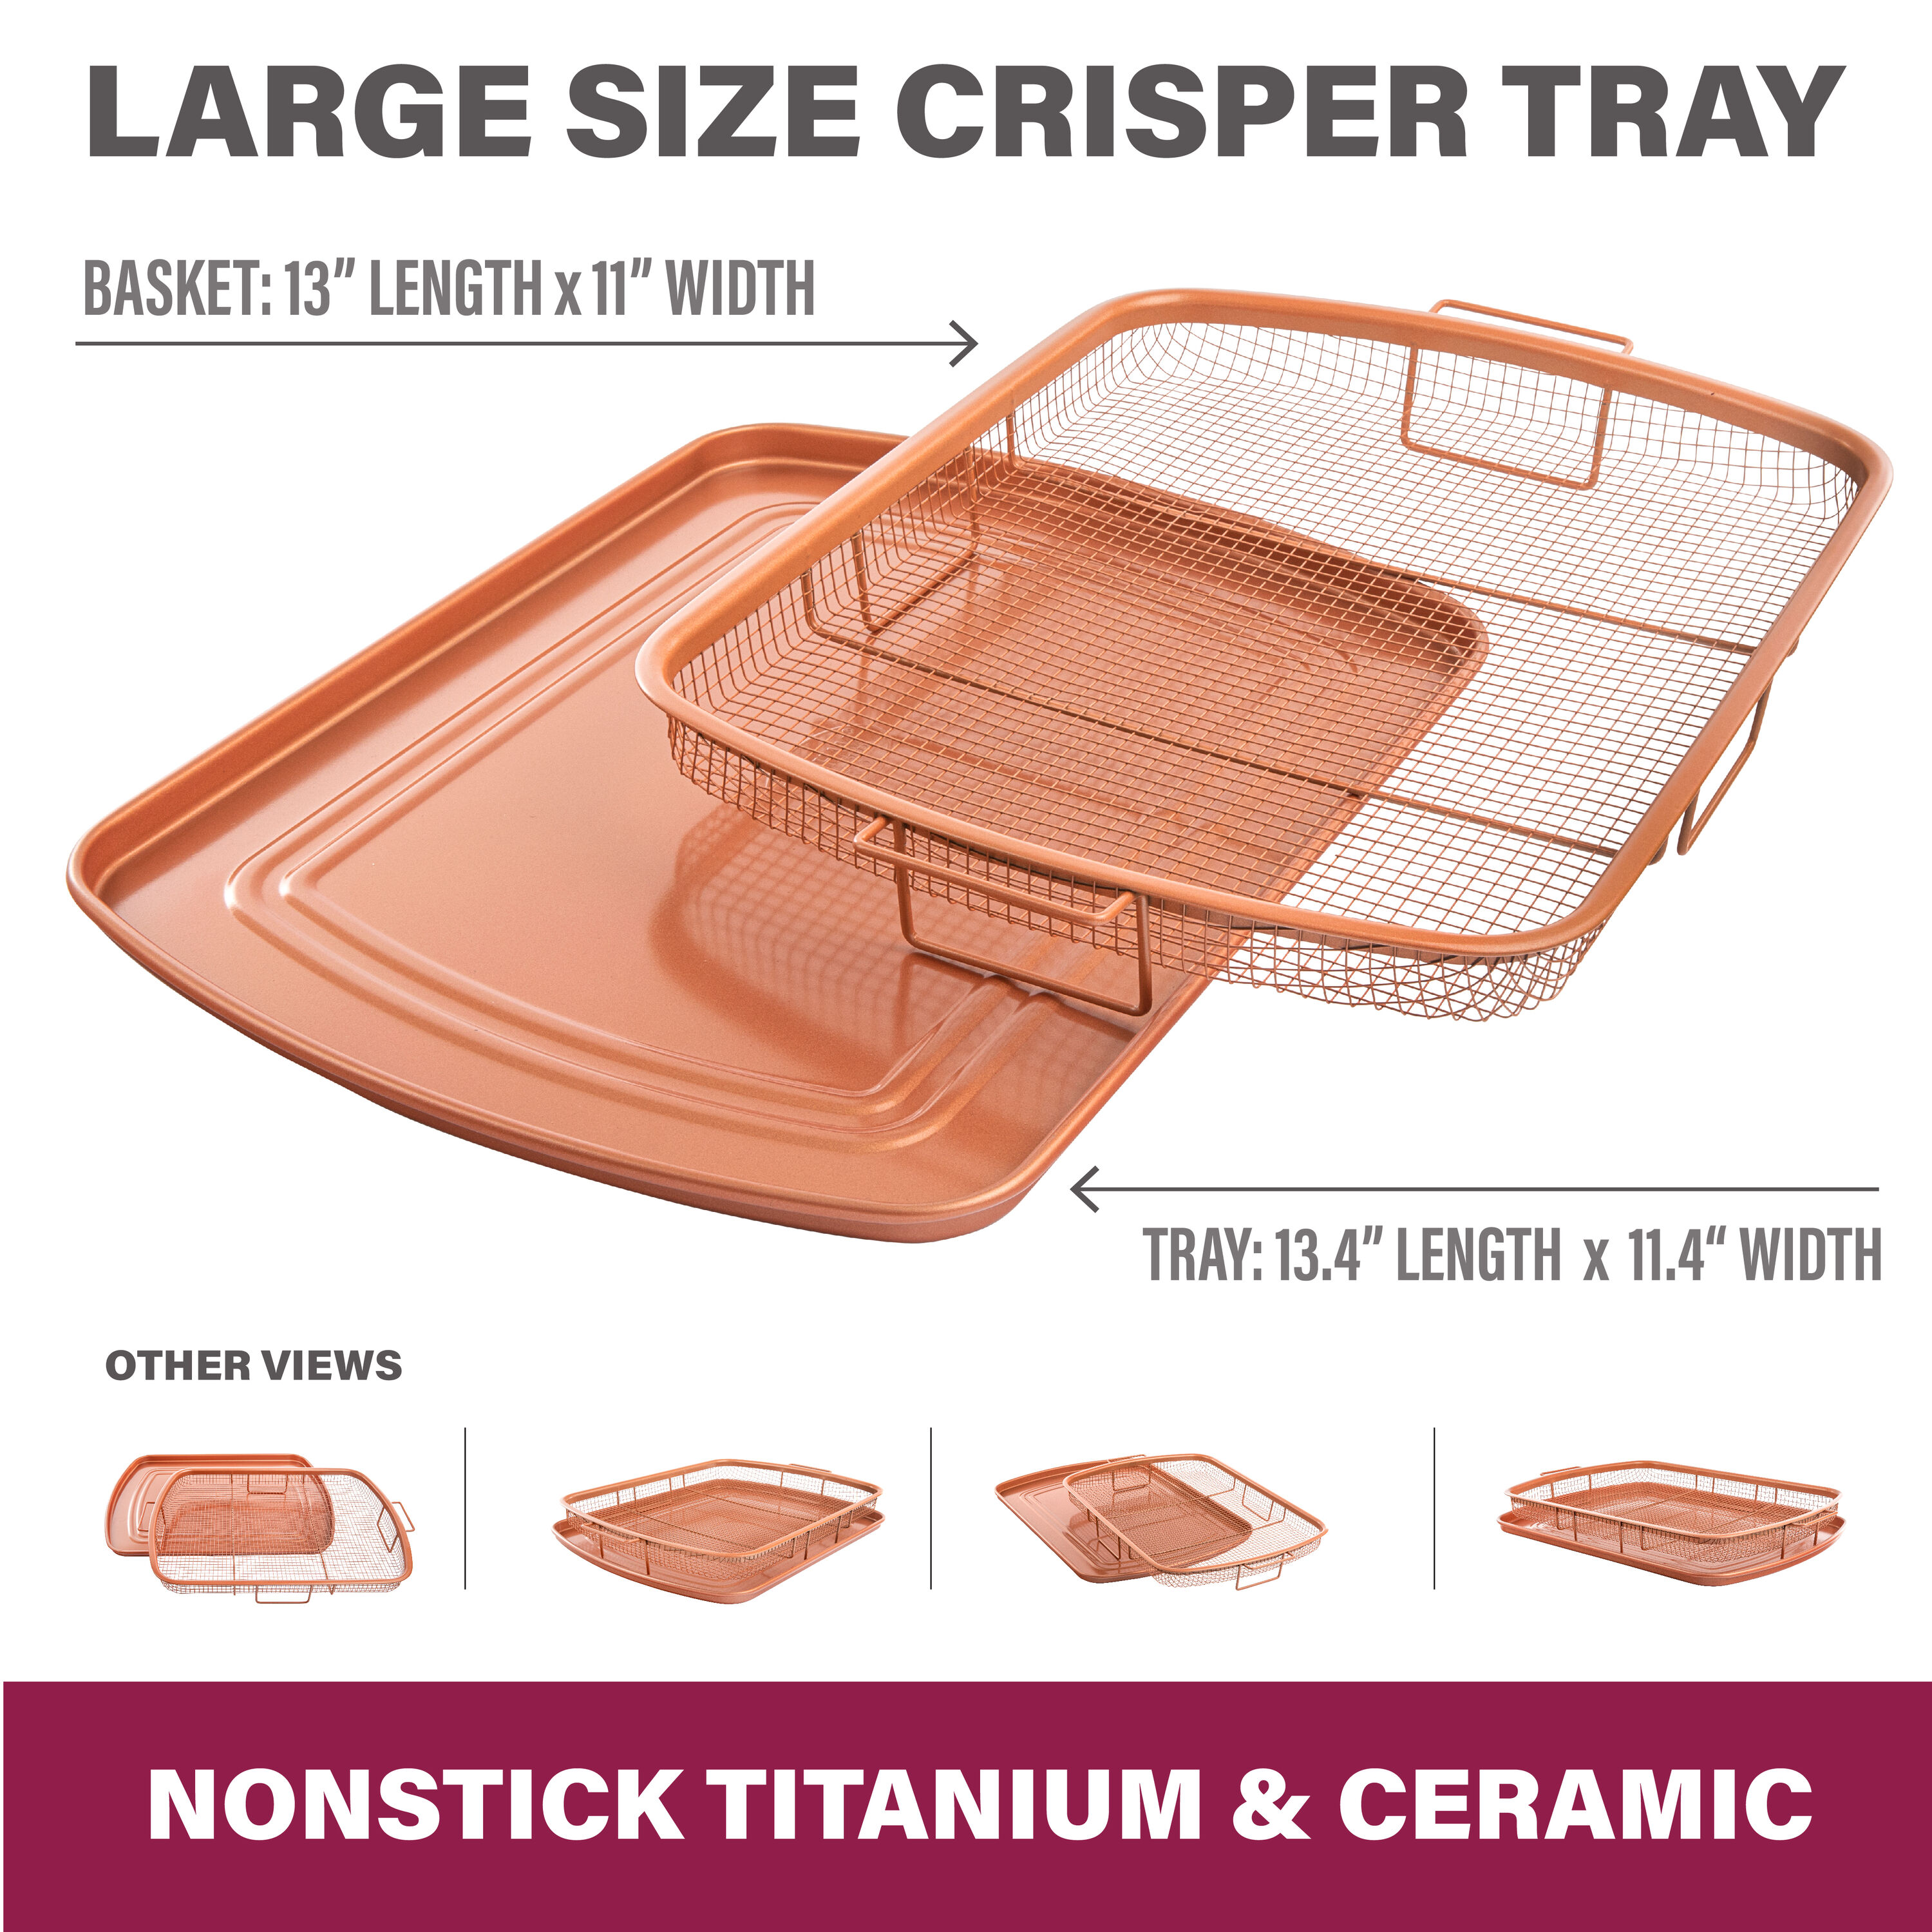 Gotham Steel Crisper Tray for Oven, 2 Piece Nonstick Copper Crisper Tray  and Bas